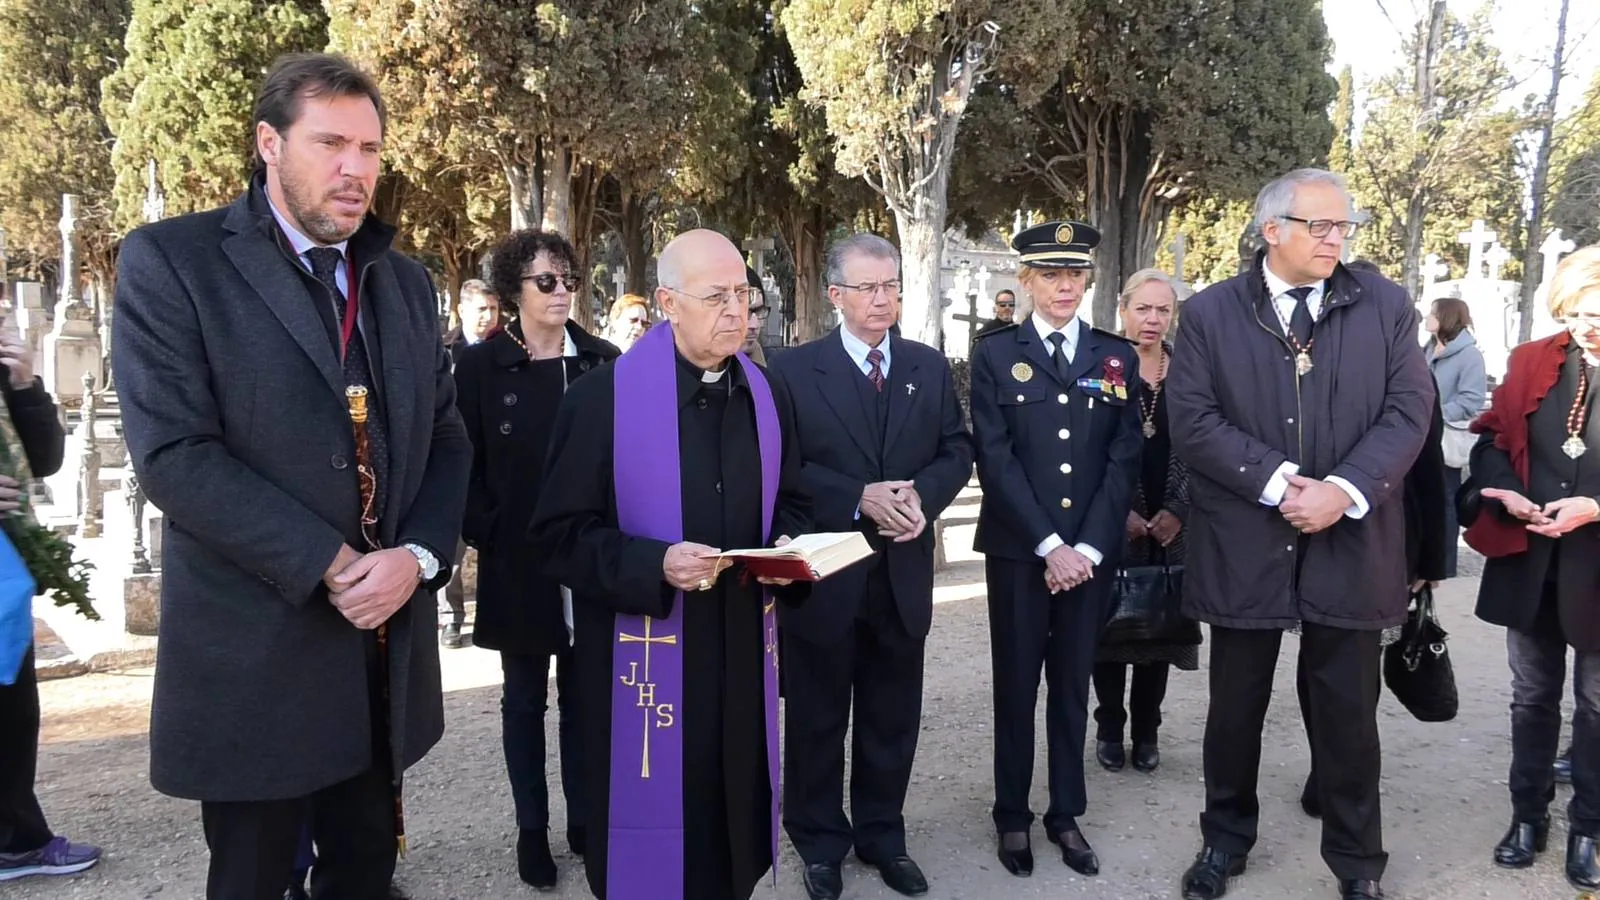 La corporación municipal, con el alcalde a la cabeza, y acompañada del cardenal arzobispo de Valladolid, Ricardo Blázquez, ha visitado hoy los cementerios municipales para rendir a homenaje a los vallisoletanos que ya no están